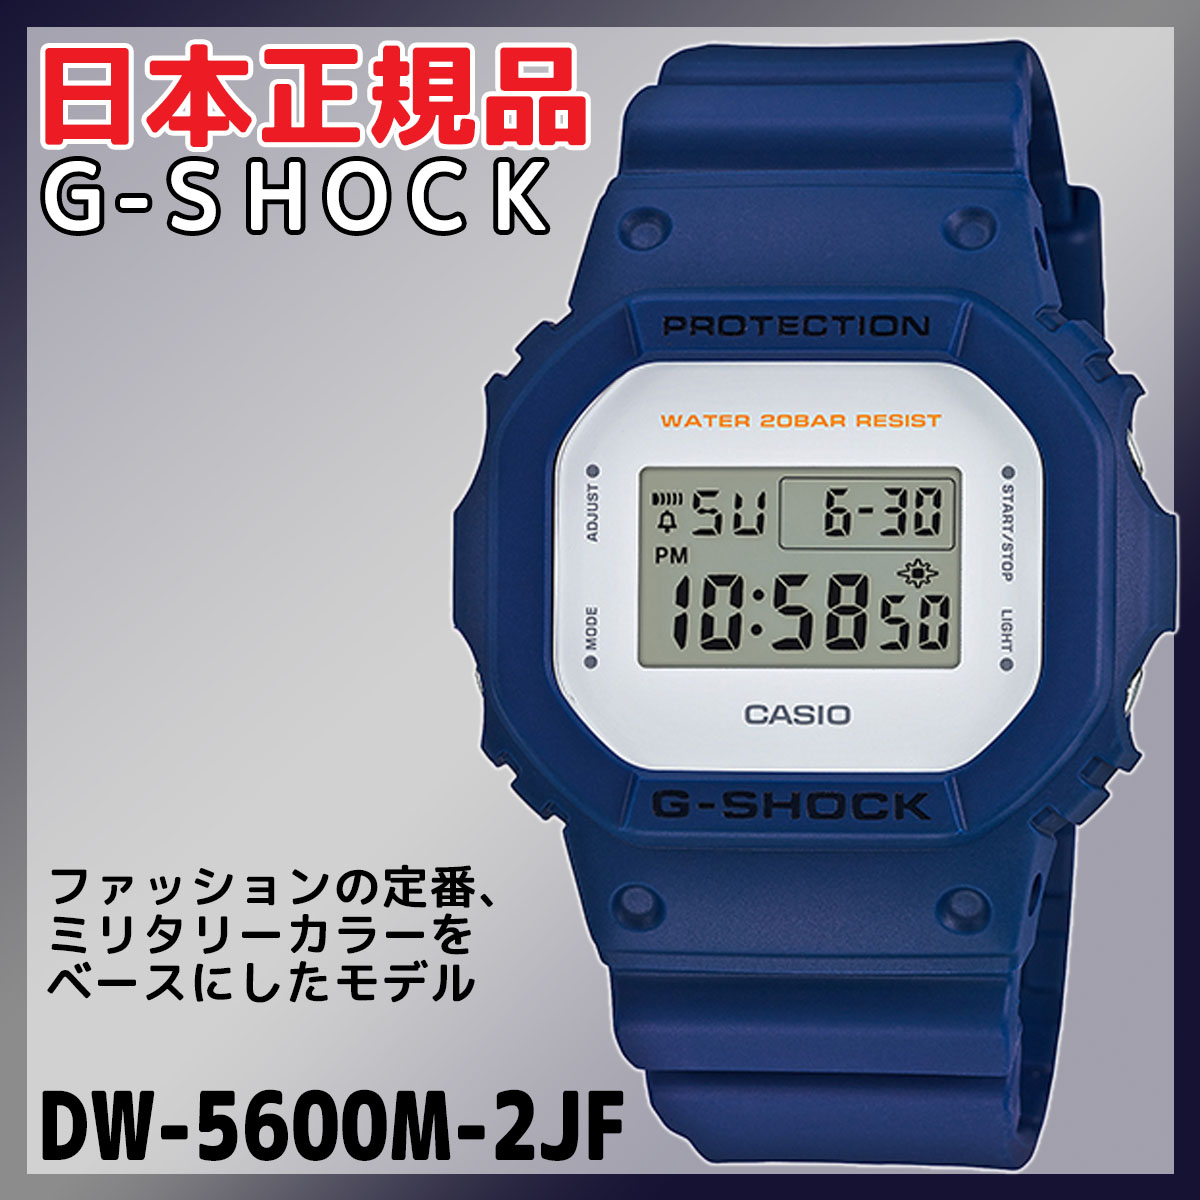 お見舞い 送料無料 日本正規品 気圧防水 腕時計 G Shock ジーショック カシオ Dw 5600m 2jf 男女兼用腕時計 Datasus Saude Gov Br